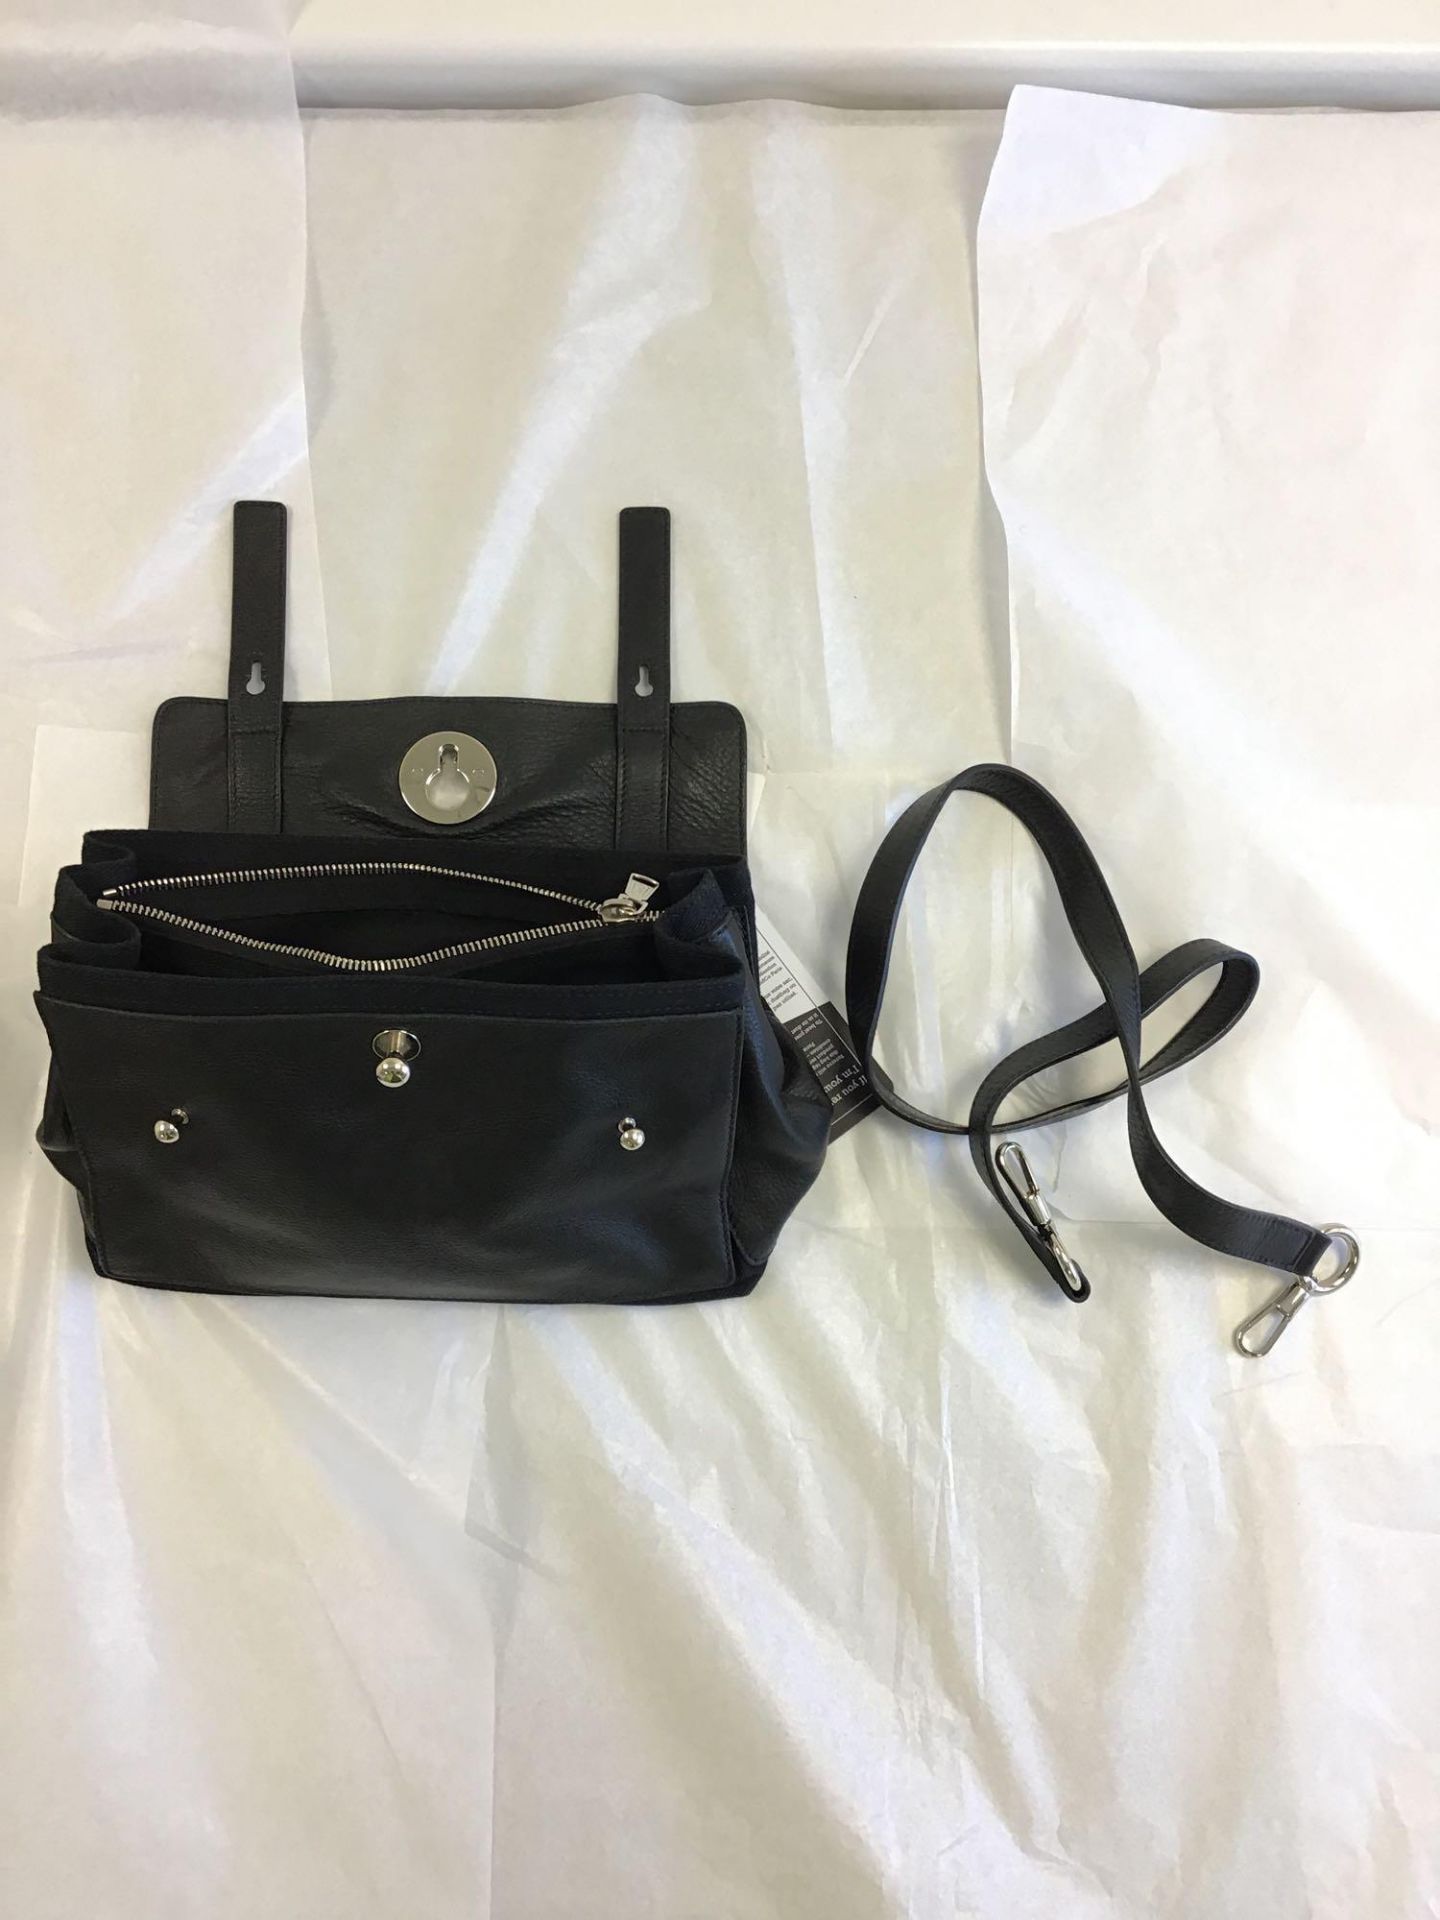 Yves St-Laurent Black Muse 2 Shoulder Bag - Image 12 of 15